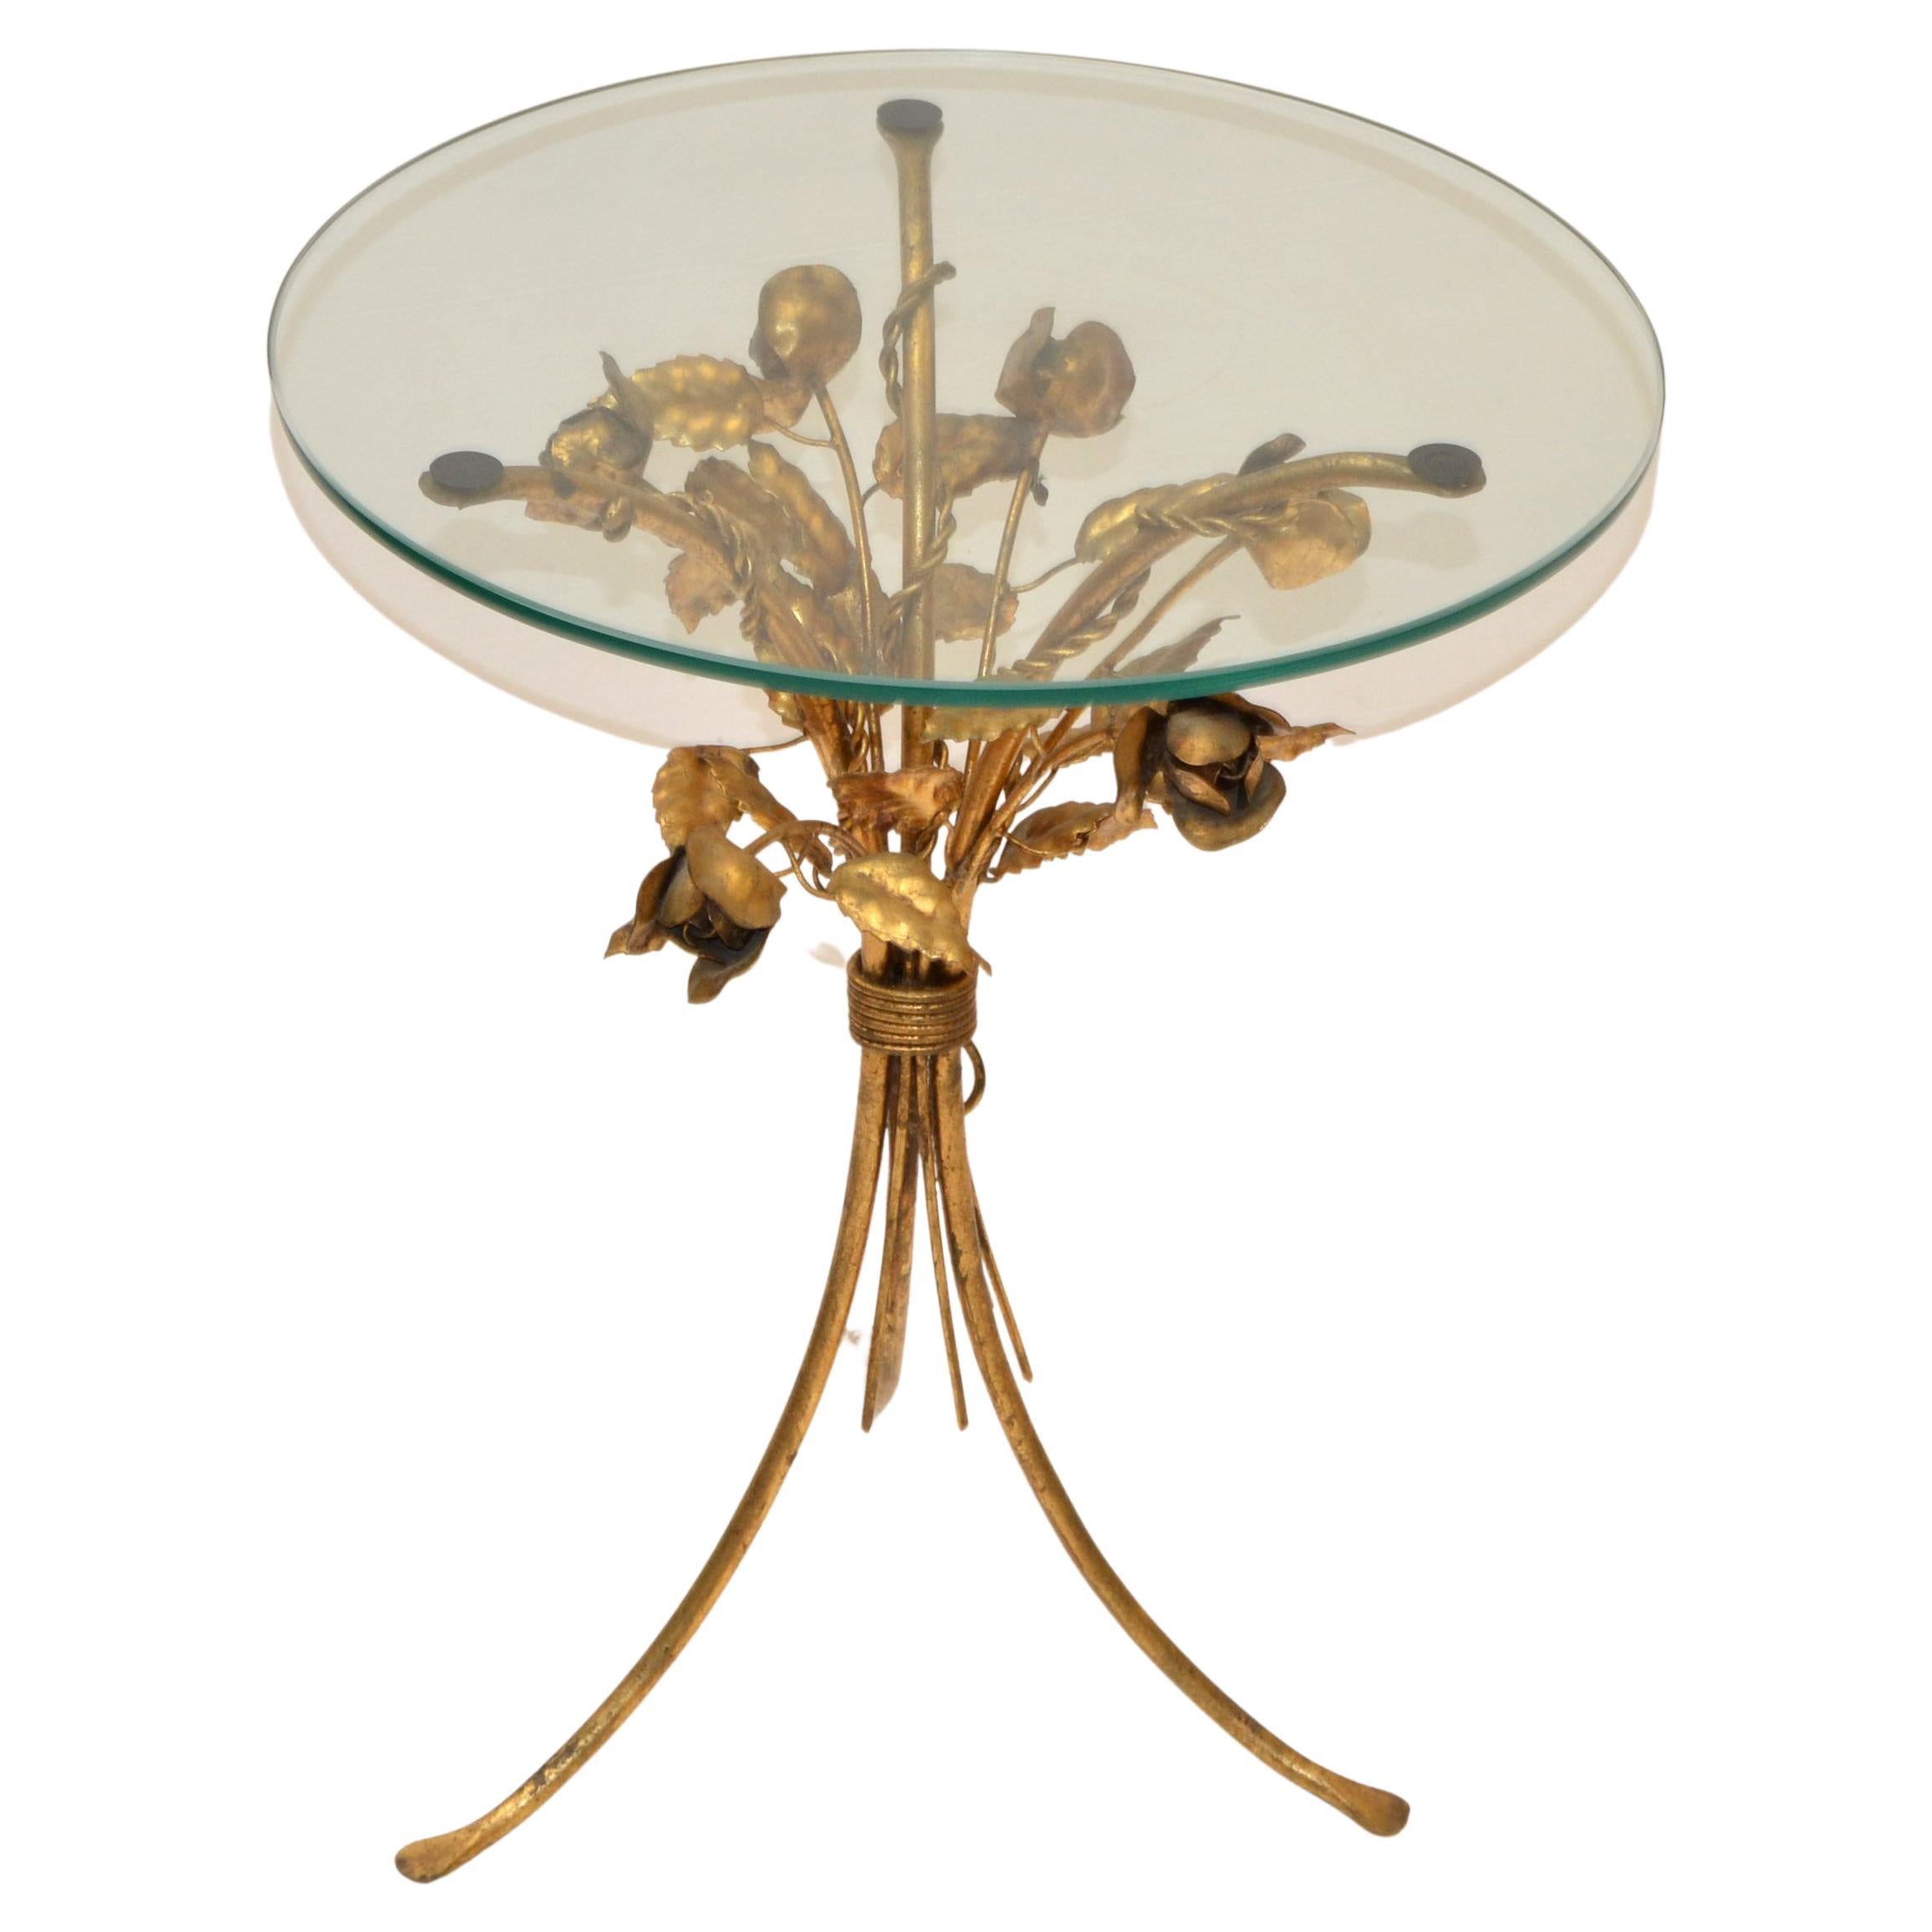 Hollywood Regency Coco Chanel Stil Beistell-, End- oder Getränketisch in vergoldetem Eisen Rosen auf Stielen mit Glasplatte.
Dieser Tisch wurde in den 1960er Jahren in Italien hergestellt und weist eine starke Patina auf.
Die runde Glasplatte hat